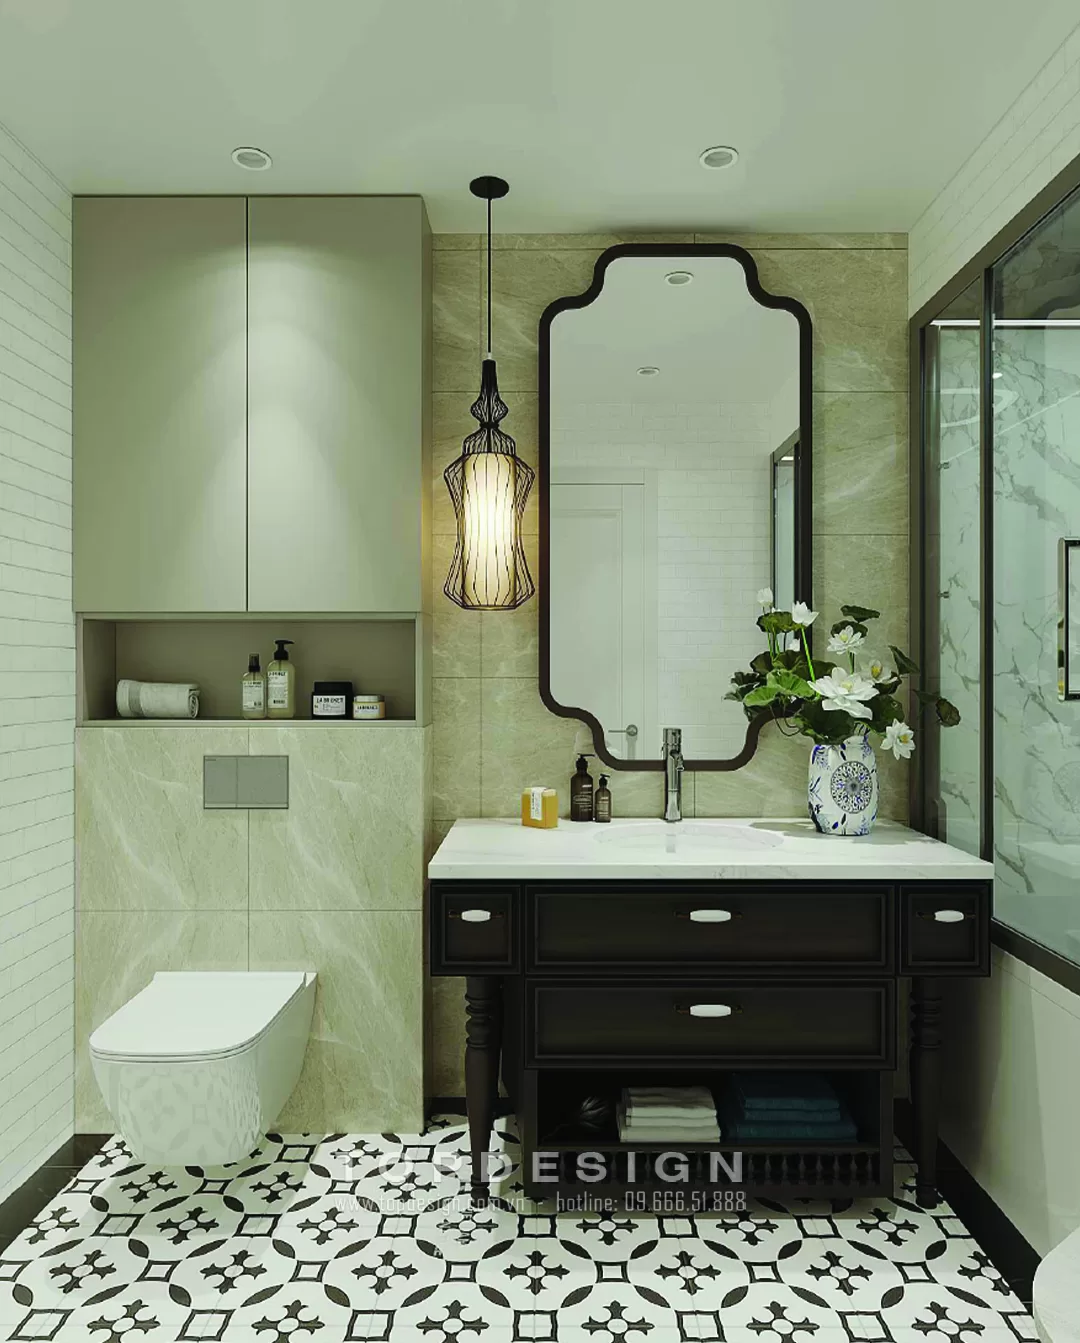 Mẫu thiết kế nội thất phòng tắm - TOPDESIGN - 19